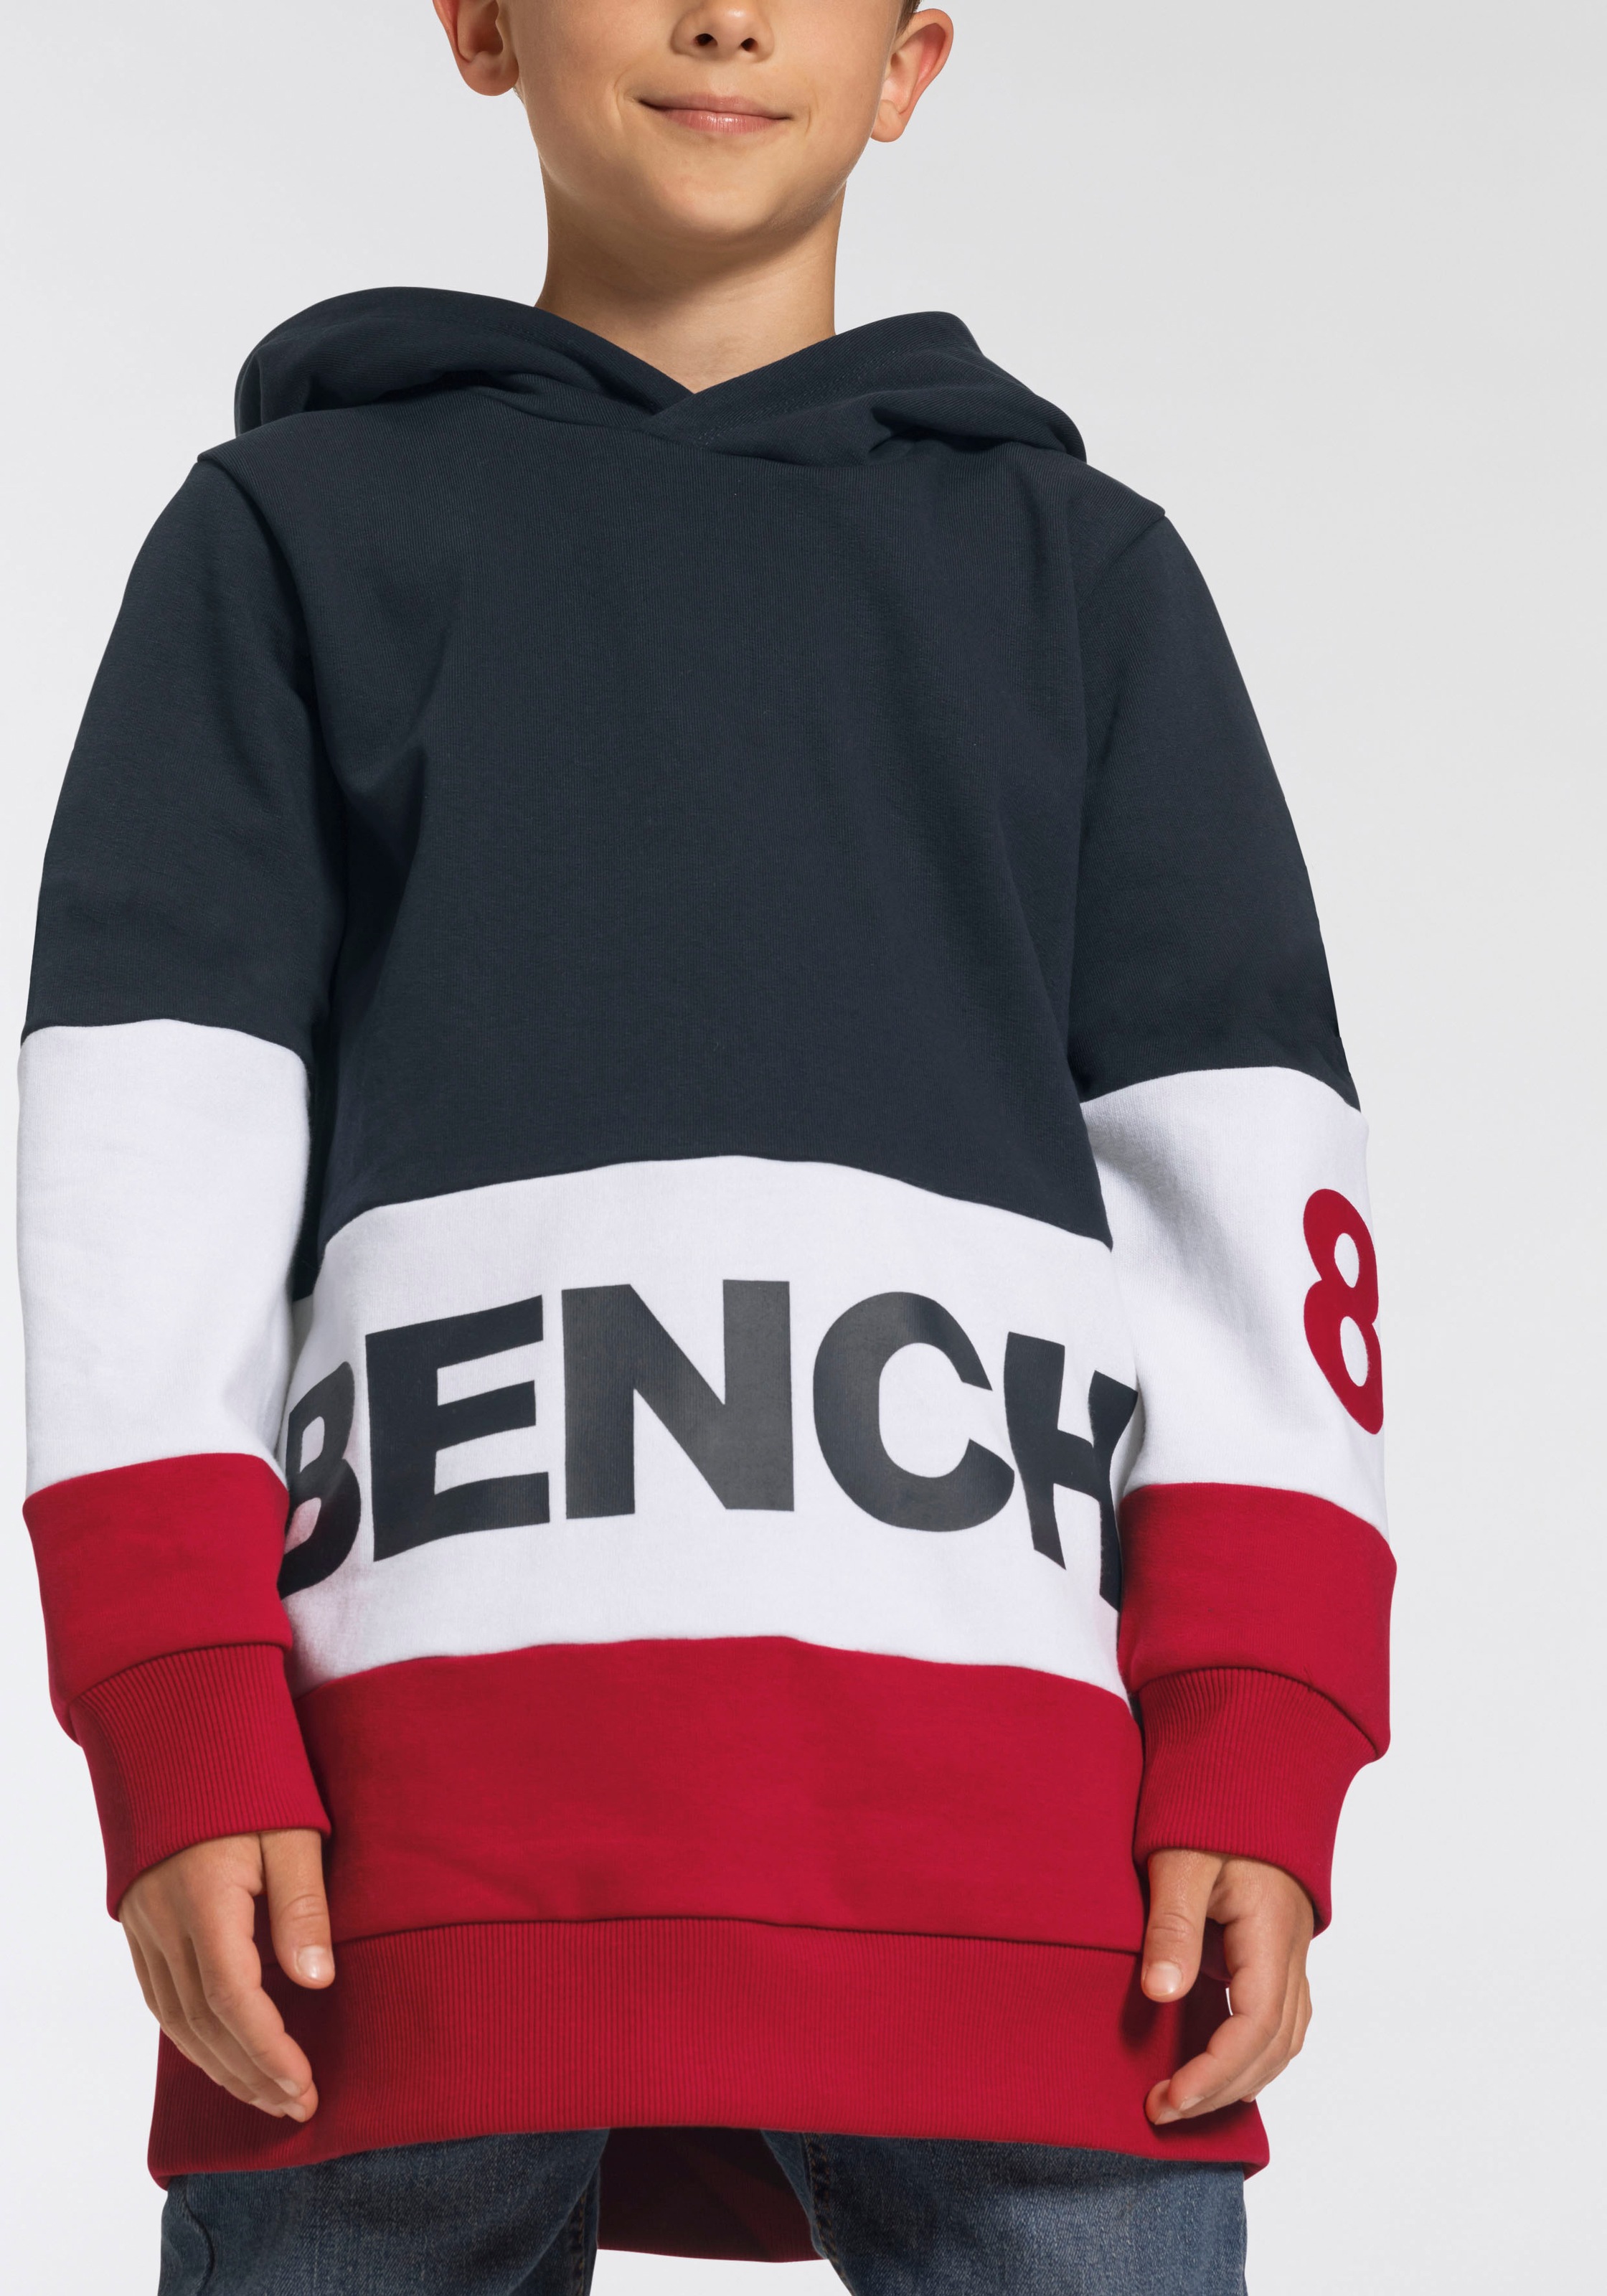 Online-Shop Kapuzensweatshirt, Design colourblocking Bench. kaufen im im